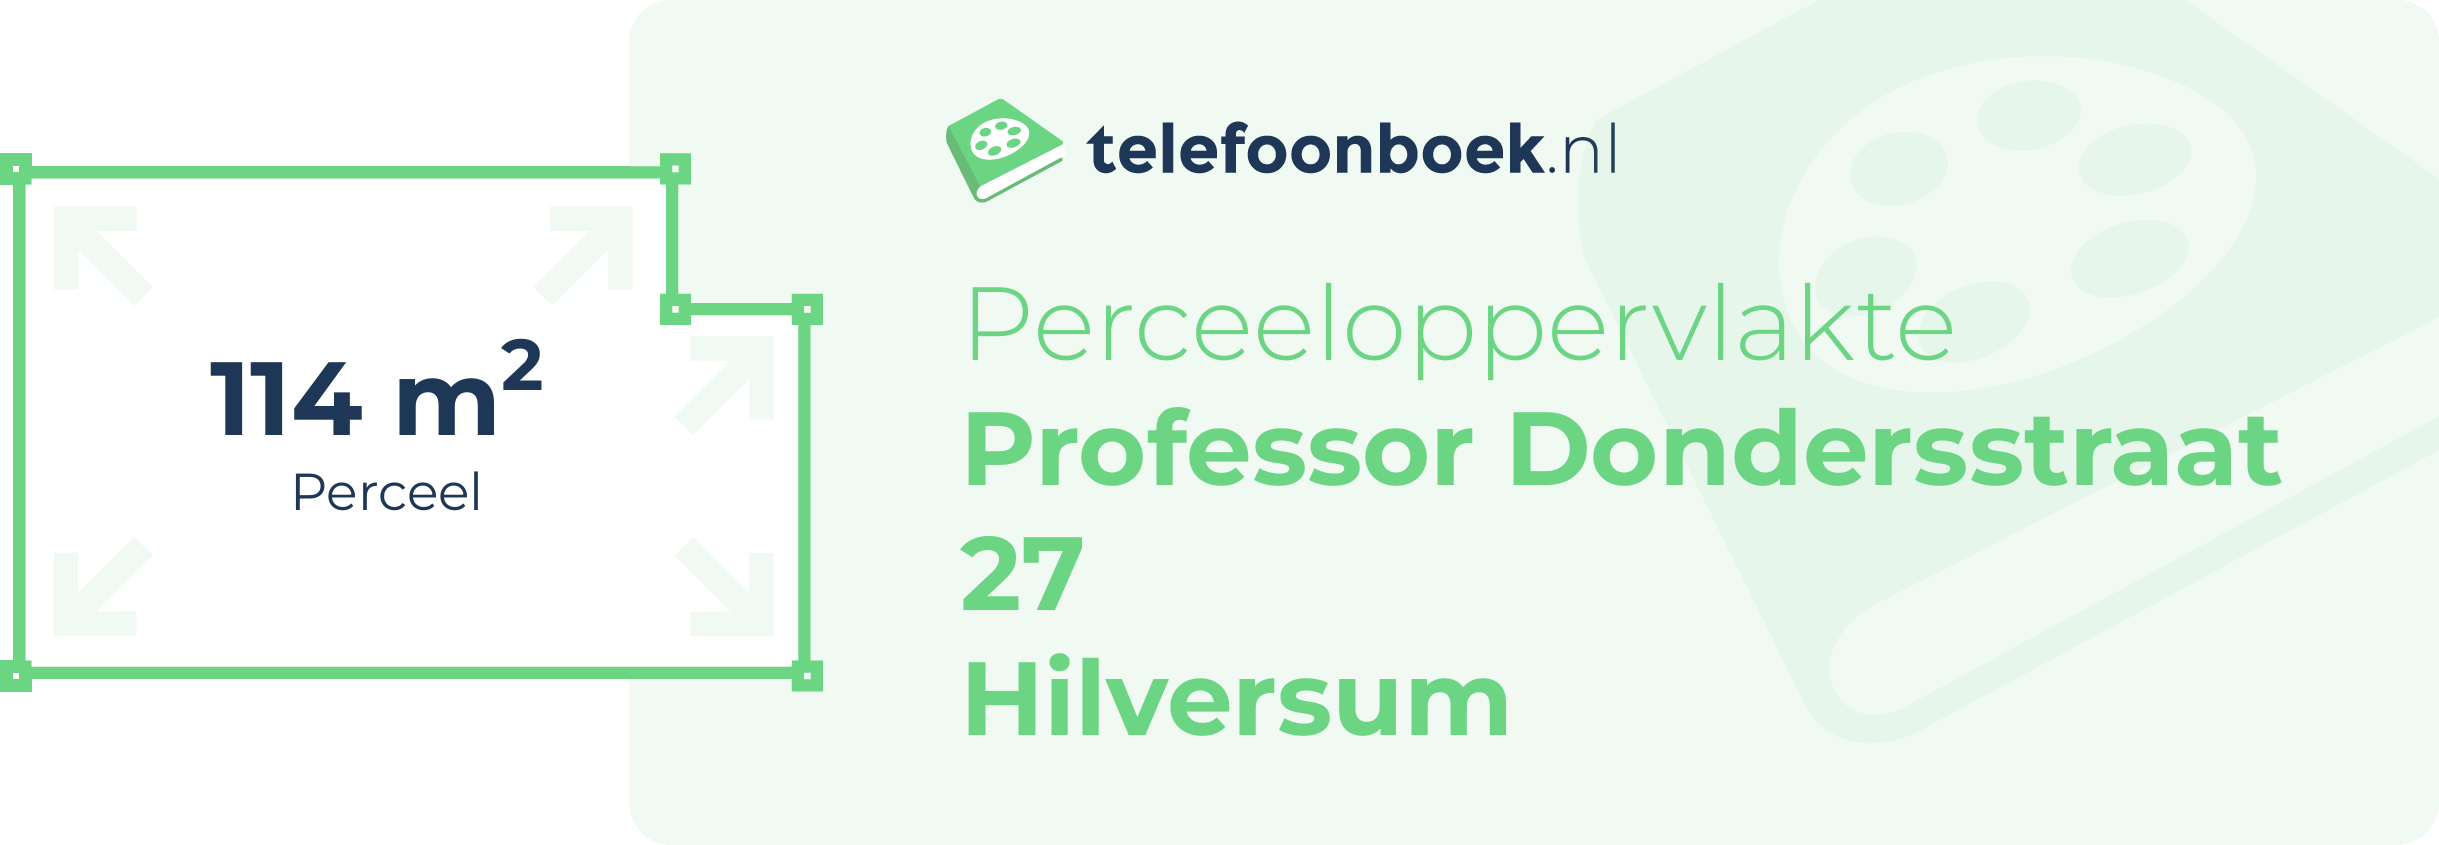 Perceeloppervlakte Professor Dondersstraat 27 Hilversum